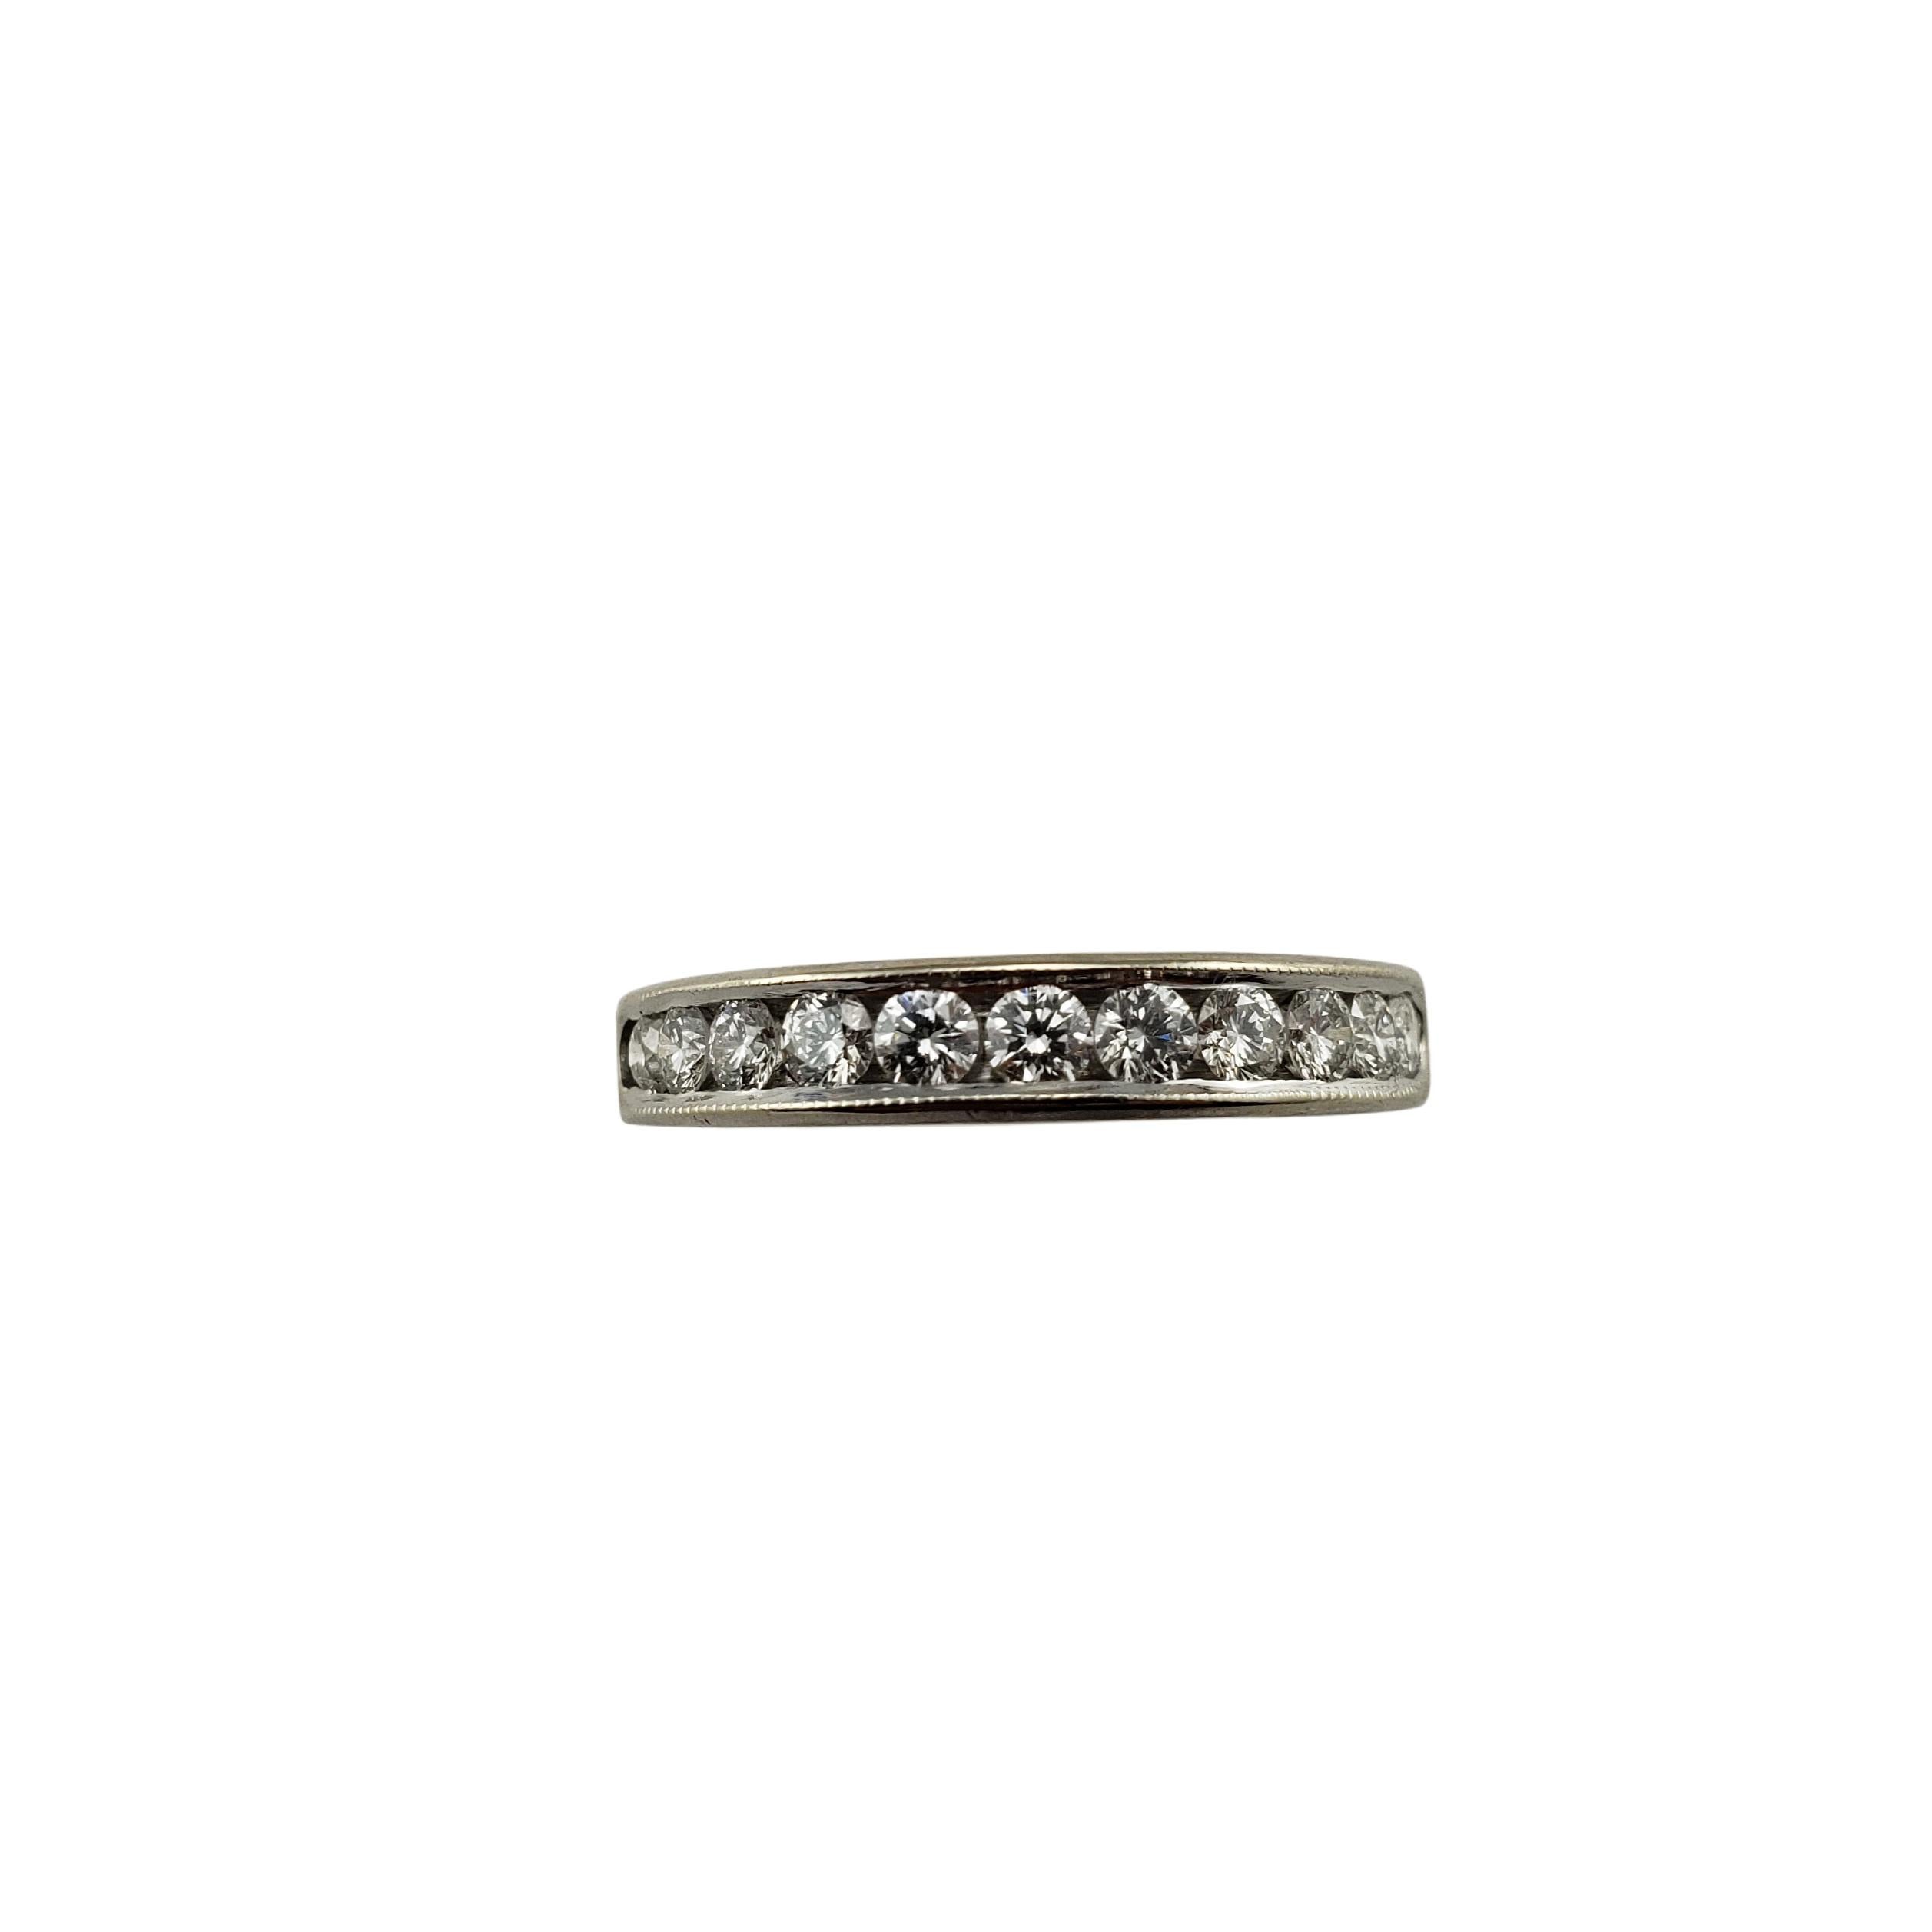 Vieille bague de mariage en or blanc 14 carats avec diamant Taille 6-

Ce bracelet étincelant présente 11 diamants ronds de taille brillant sertis dans de l'or blanc 14K magnifiquement détaillé. Largeur : 3,5 mm.
Tige : 2.5 mm.

Poids total